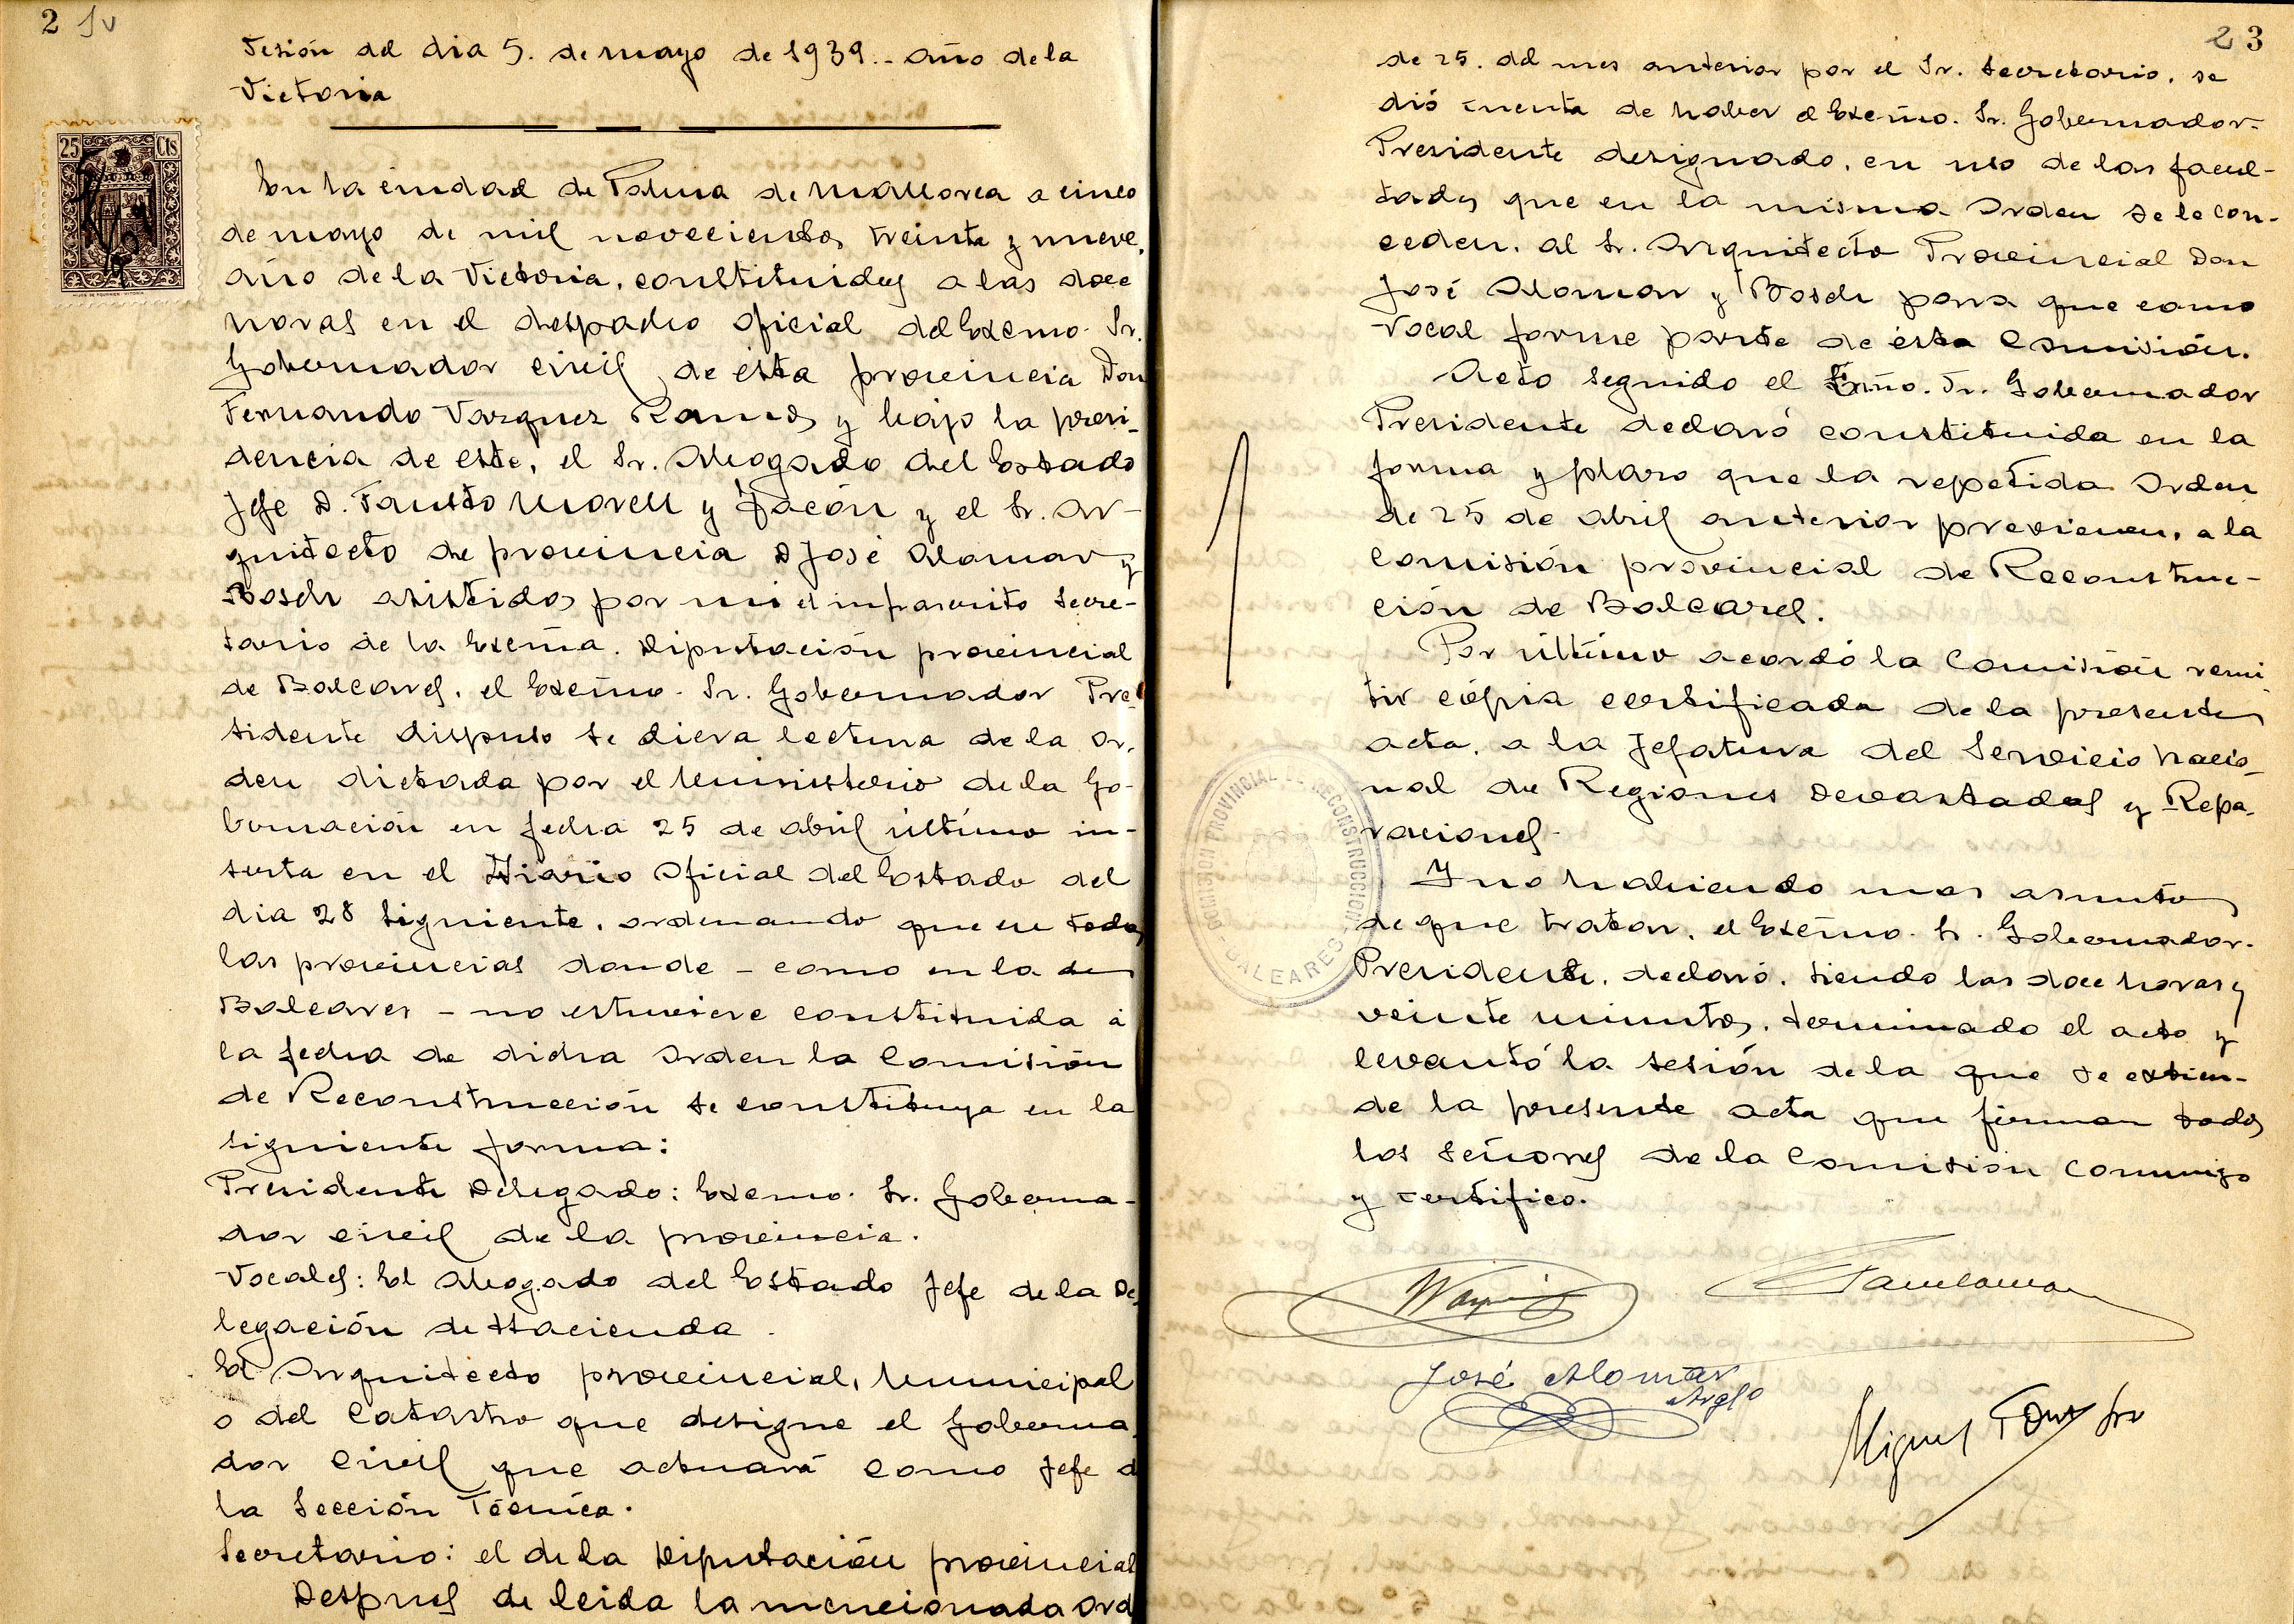 XII-728/2 Acta de constitució (1939)